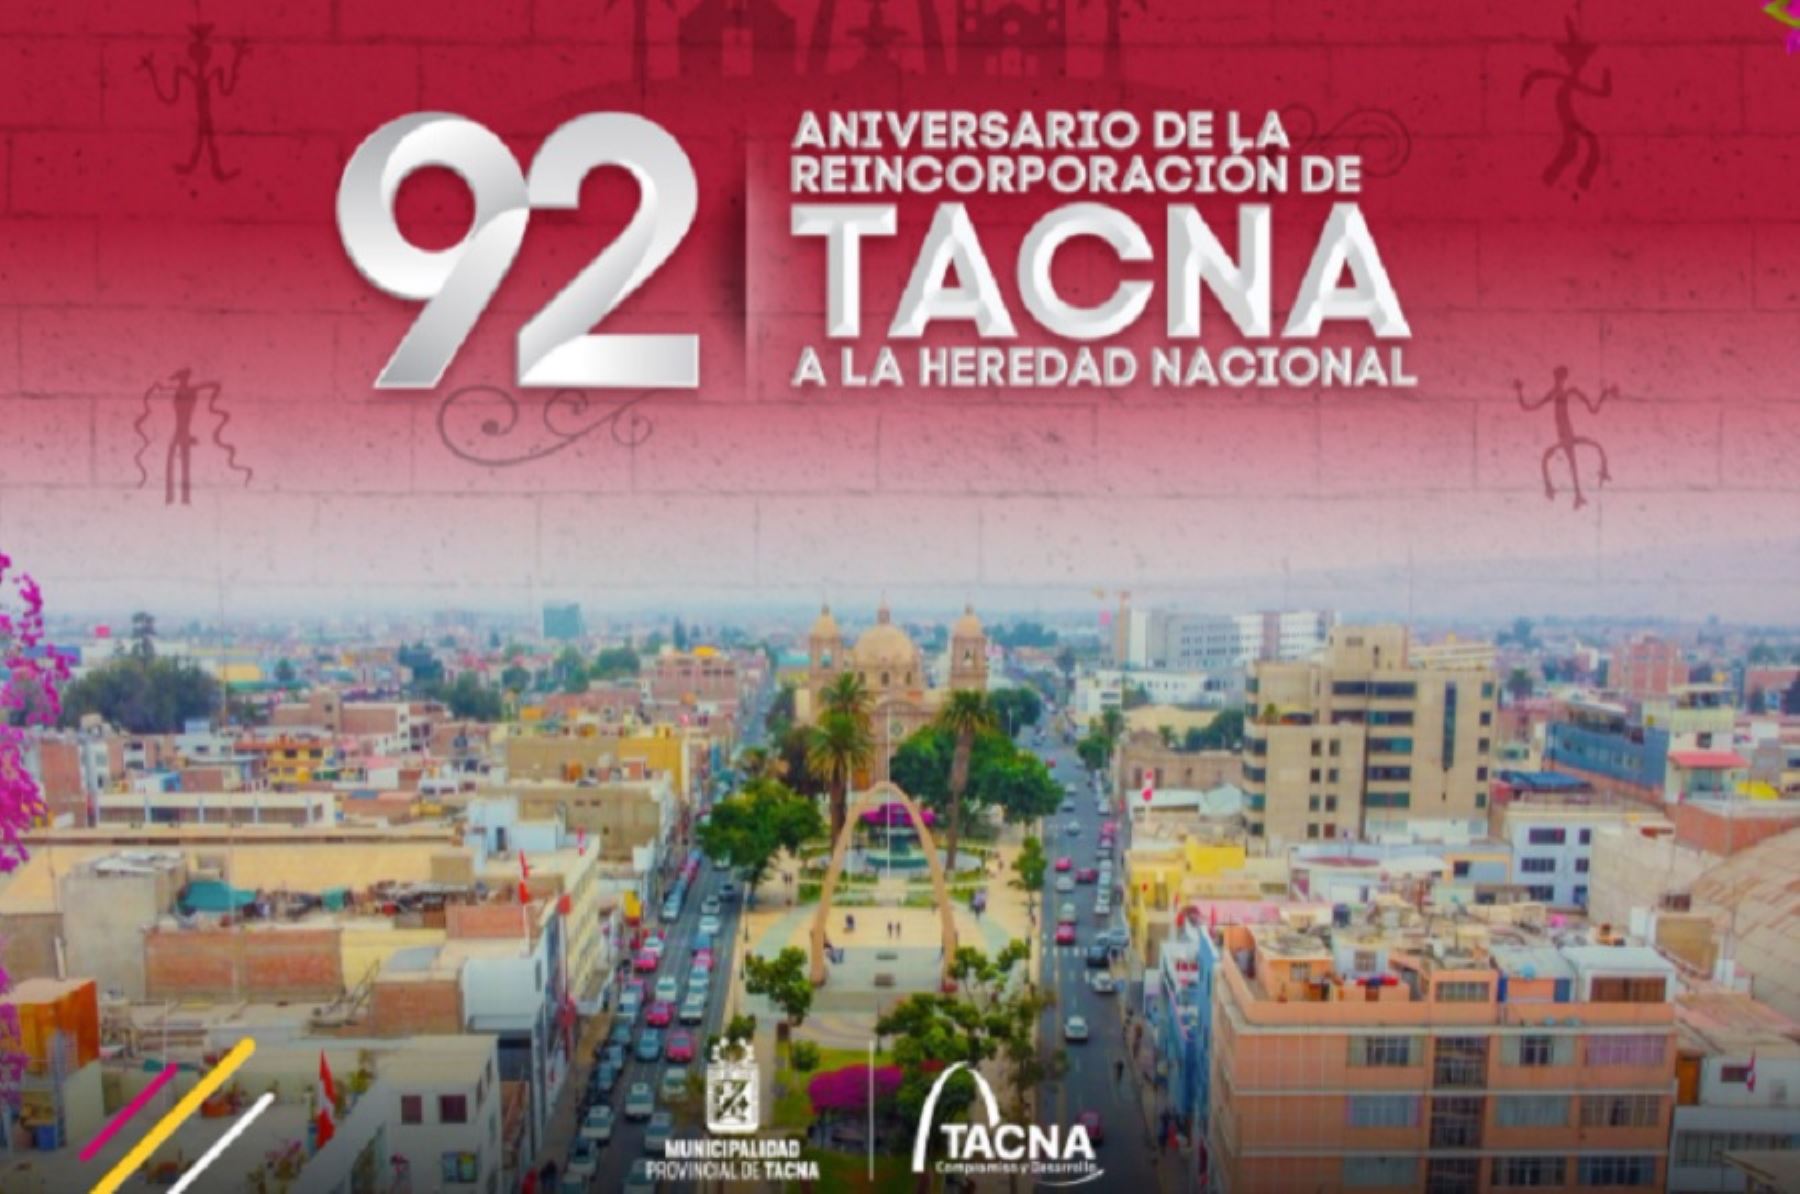 El departamento de Tacna cumplirá este 28 de agosto 92 años de su reincorporación al territorio peruano.